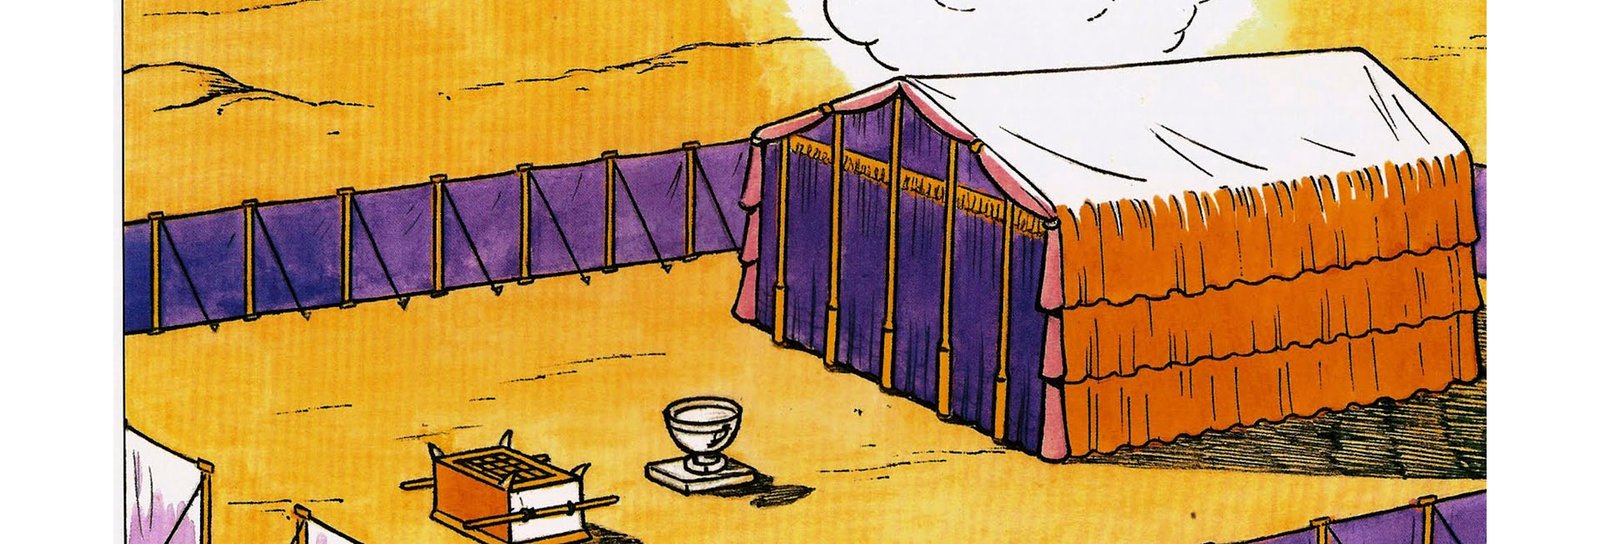 Lição 12 - Um lugar de adoração no deserto - SLIDES E VIDEOAULAS